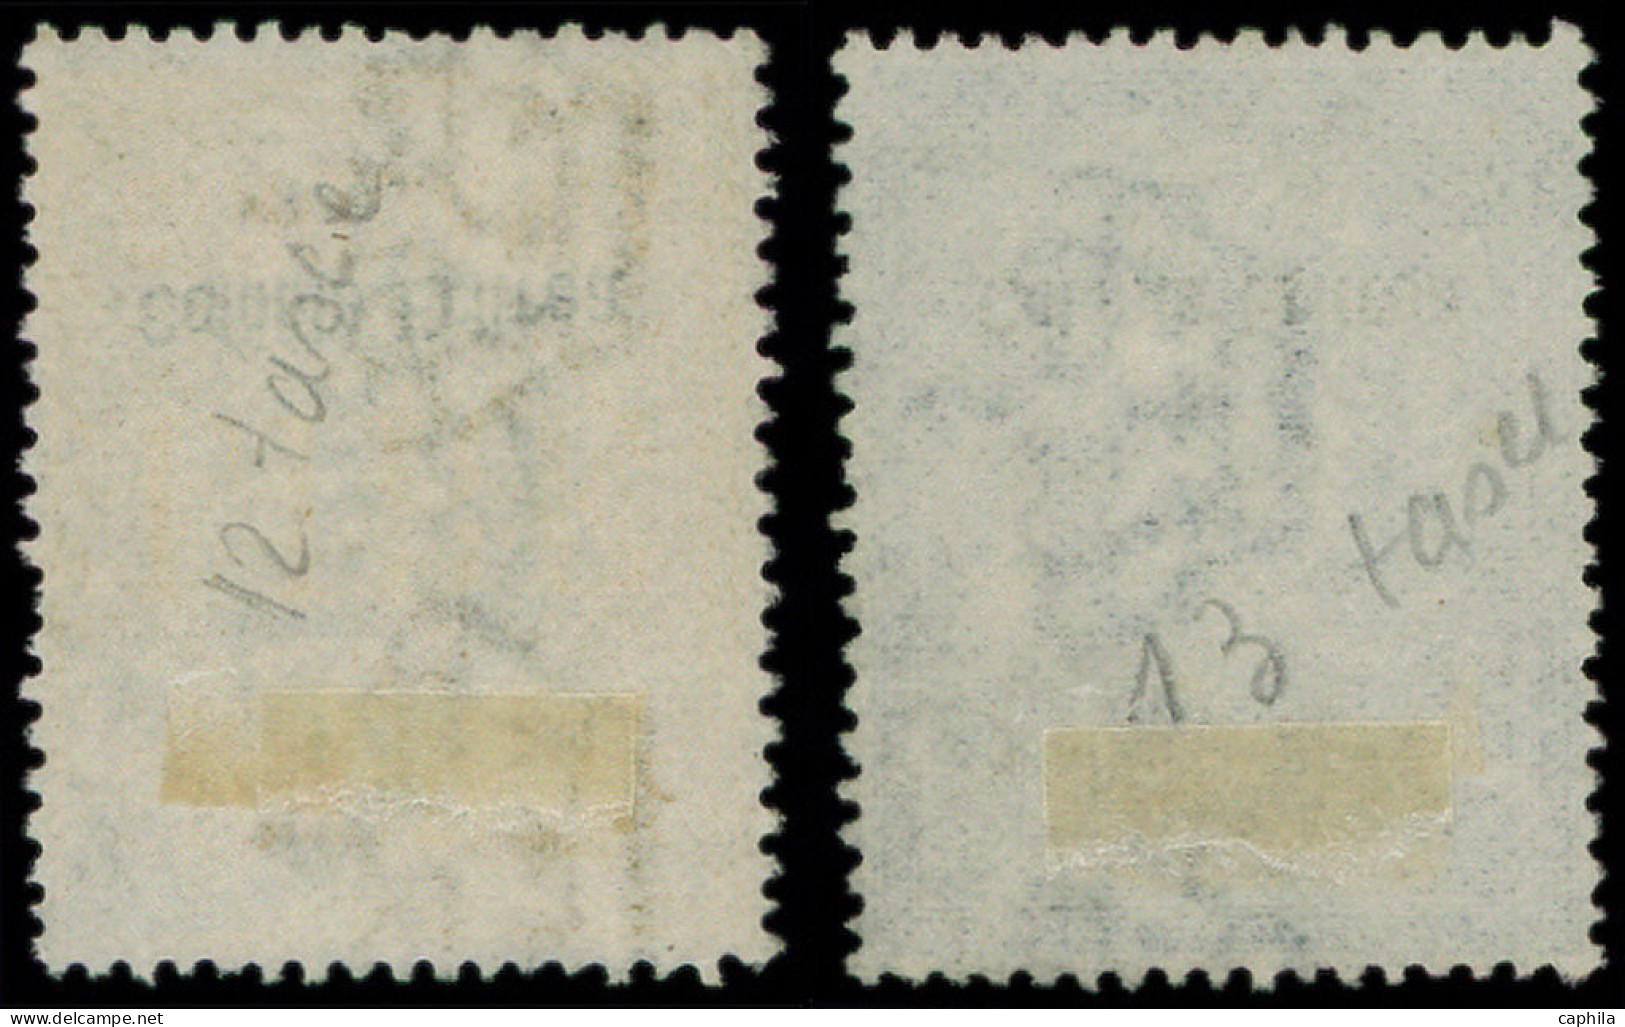 O ERYTHREE - Taxe - 12/13, Timbres De 1904 Surchargés: 50l. Jaune Et 100l. Bleu - Erythrée